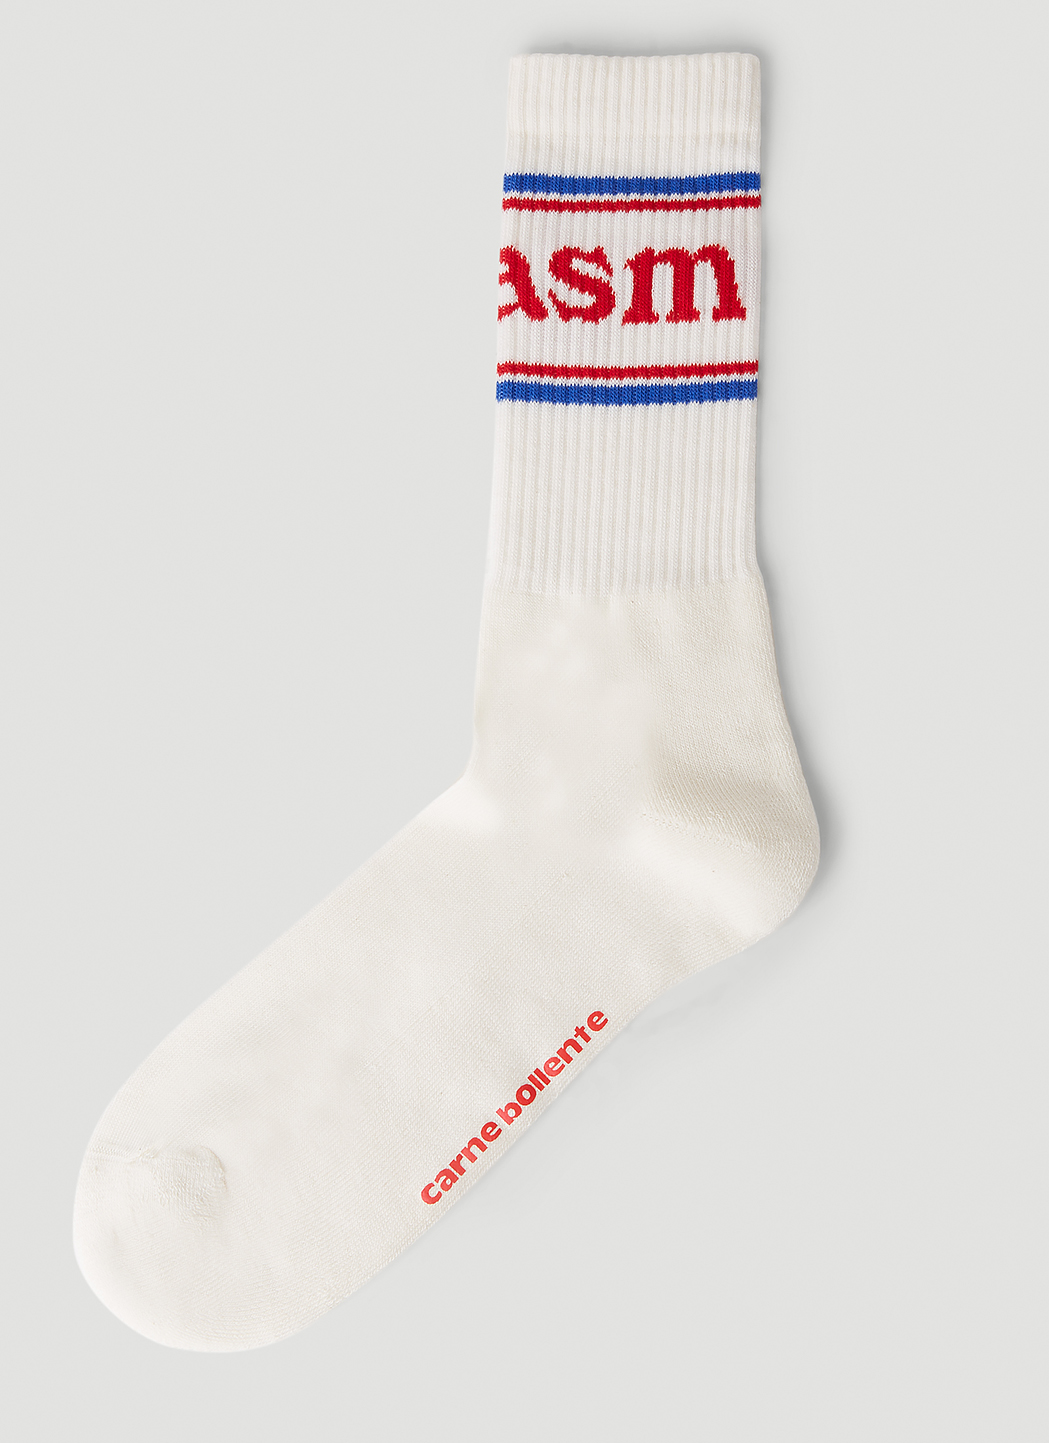 Orgasm Socks